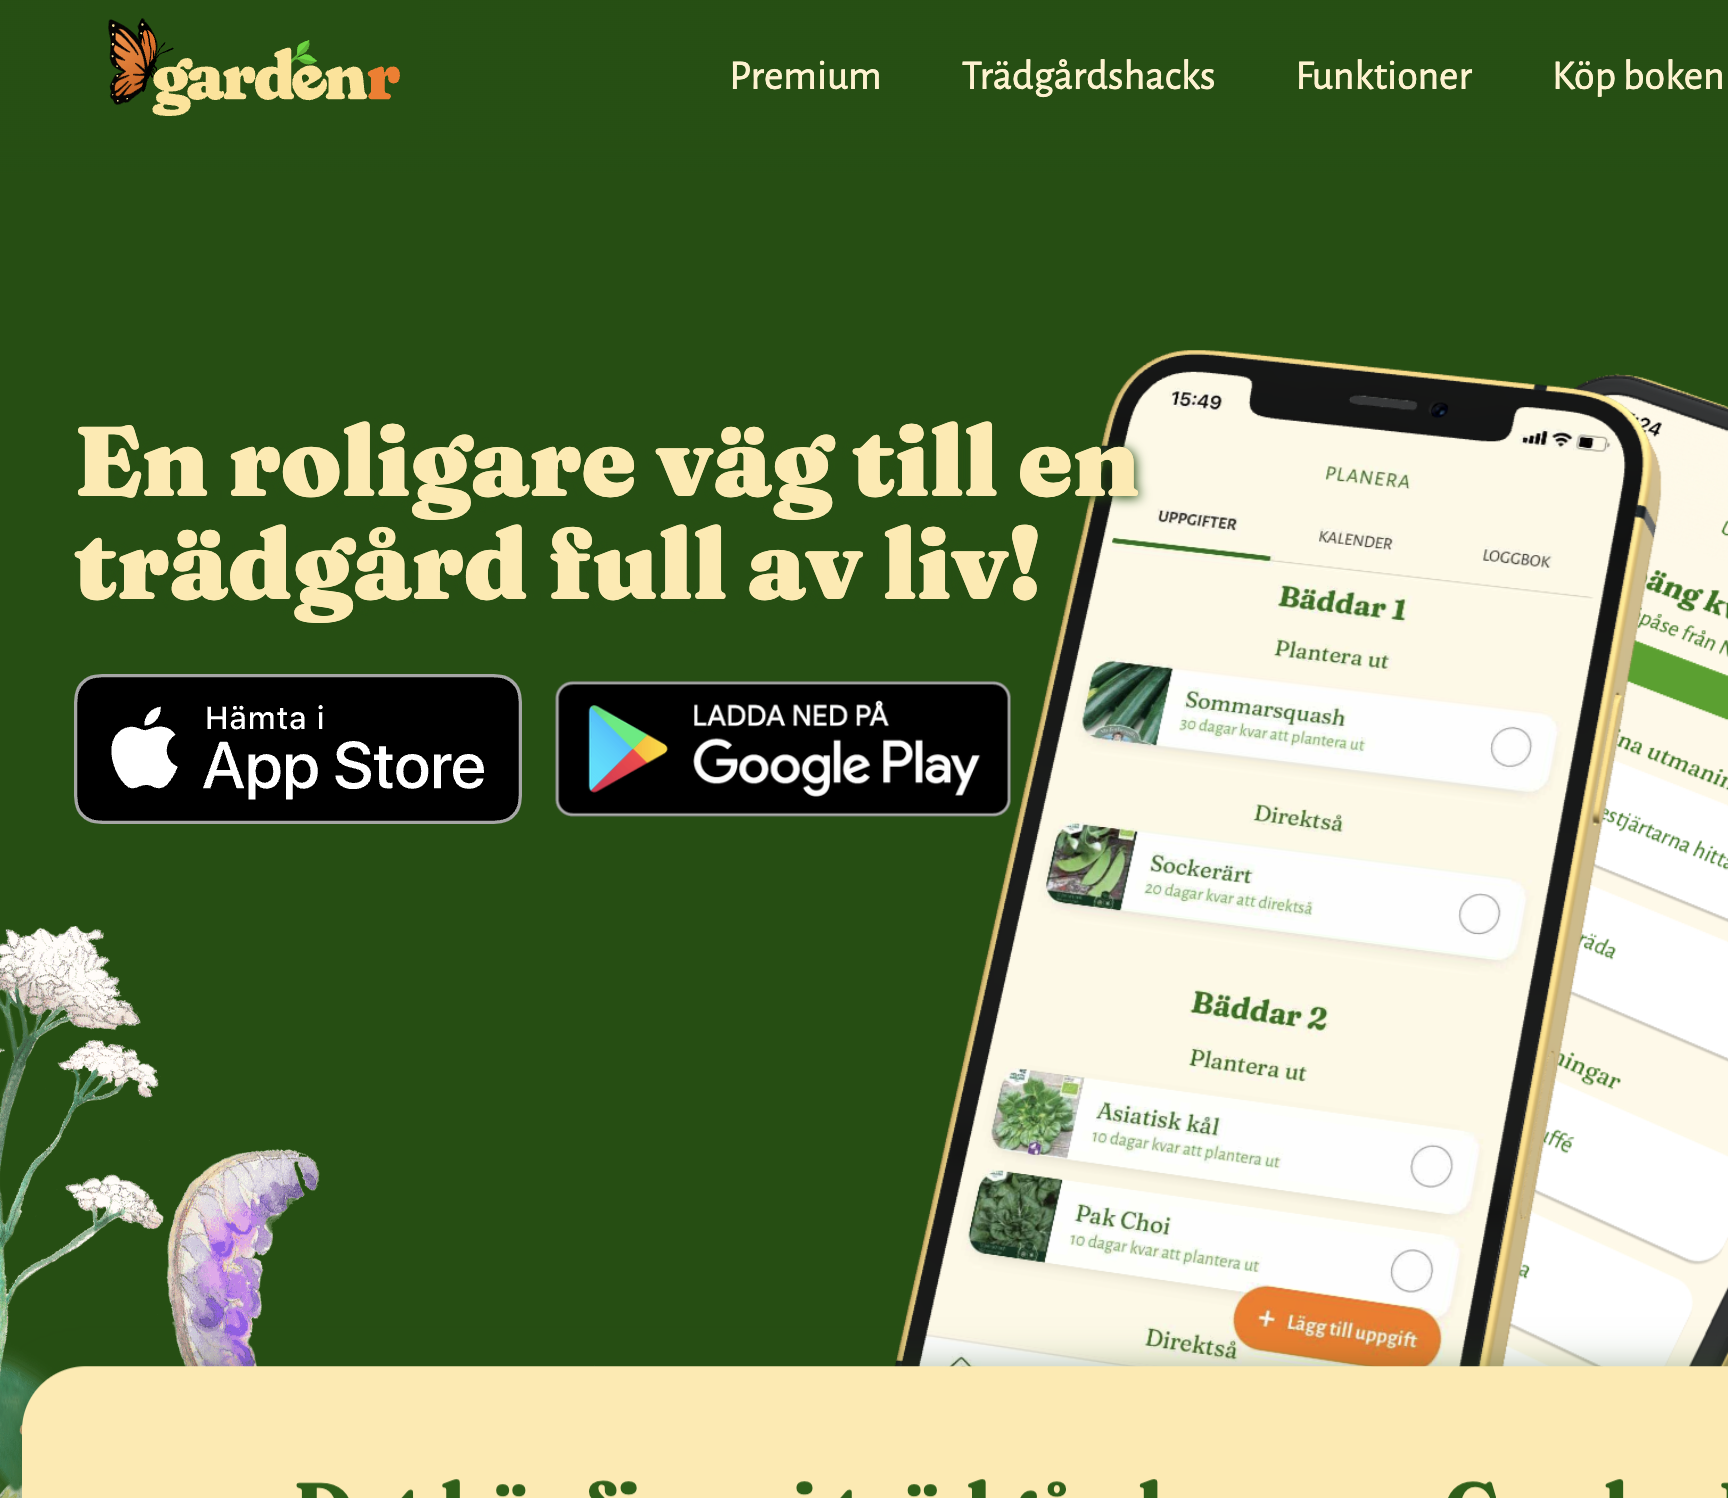 Screenshot of the GardenR website